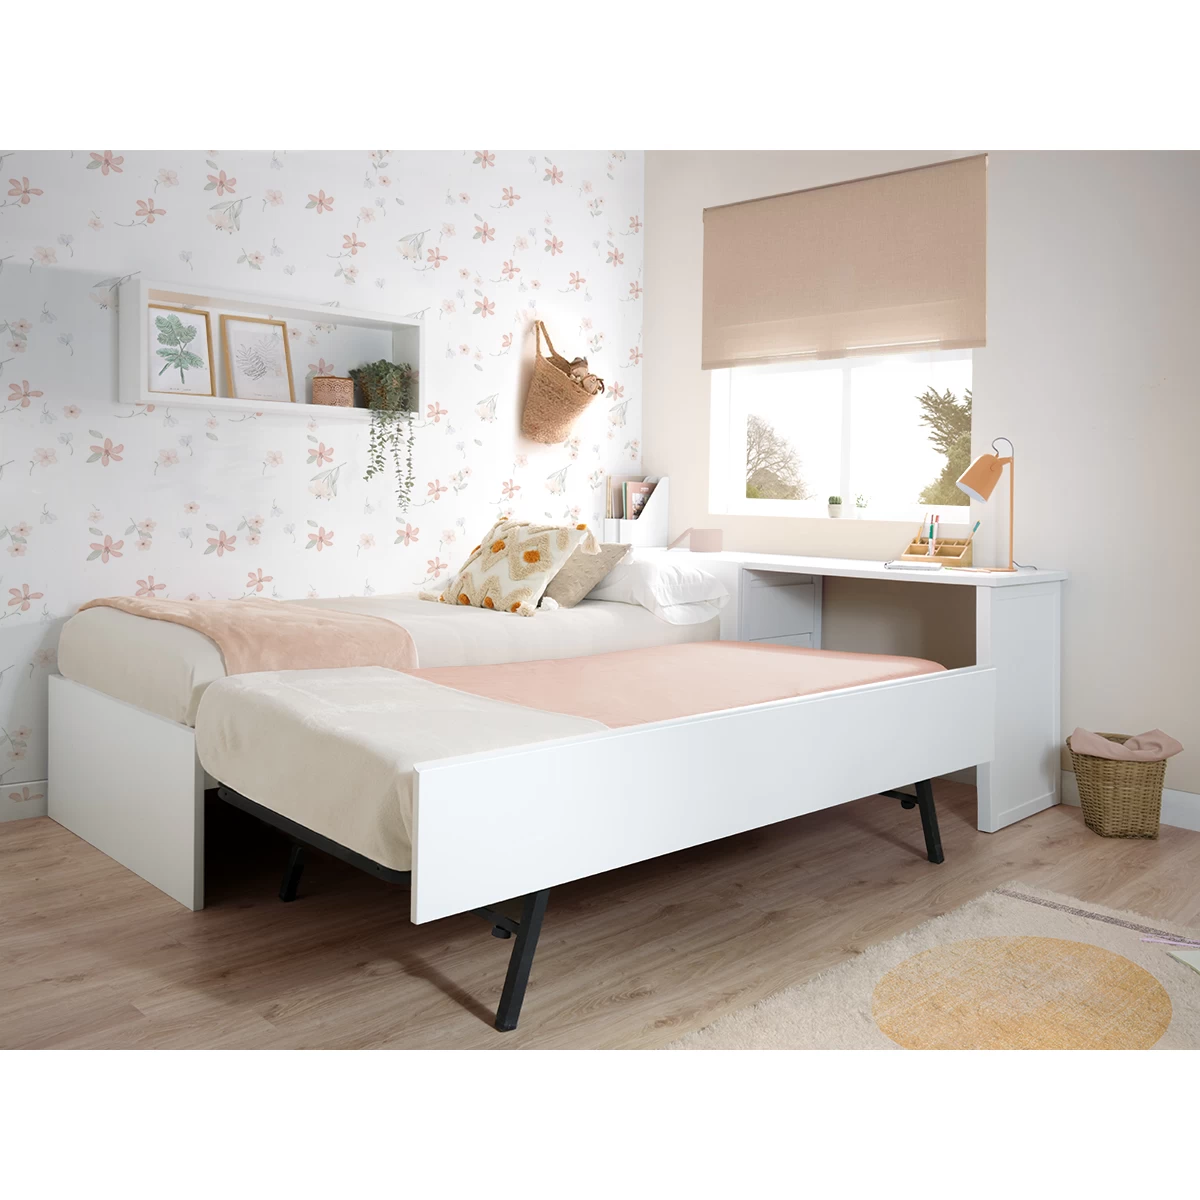 Habitación infantil con cama nido elevable y arcón-escritorio.